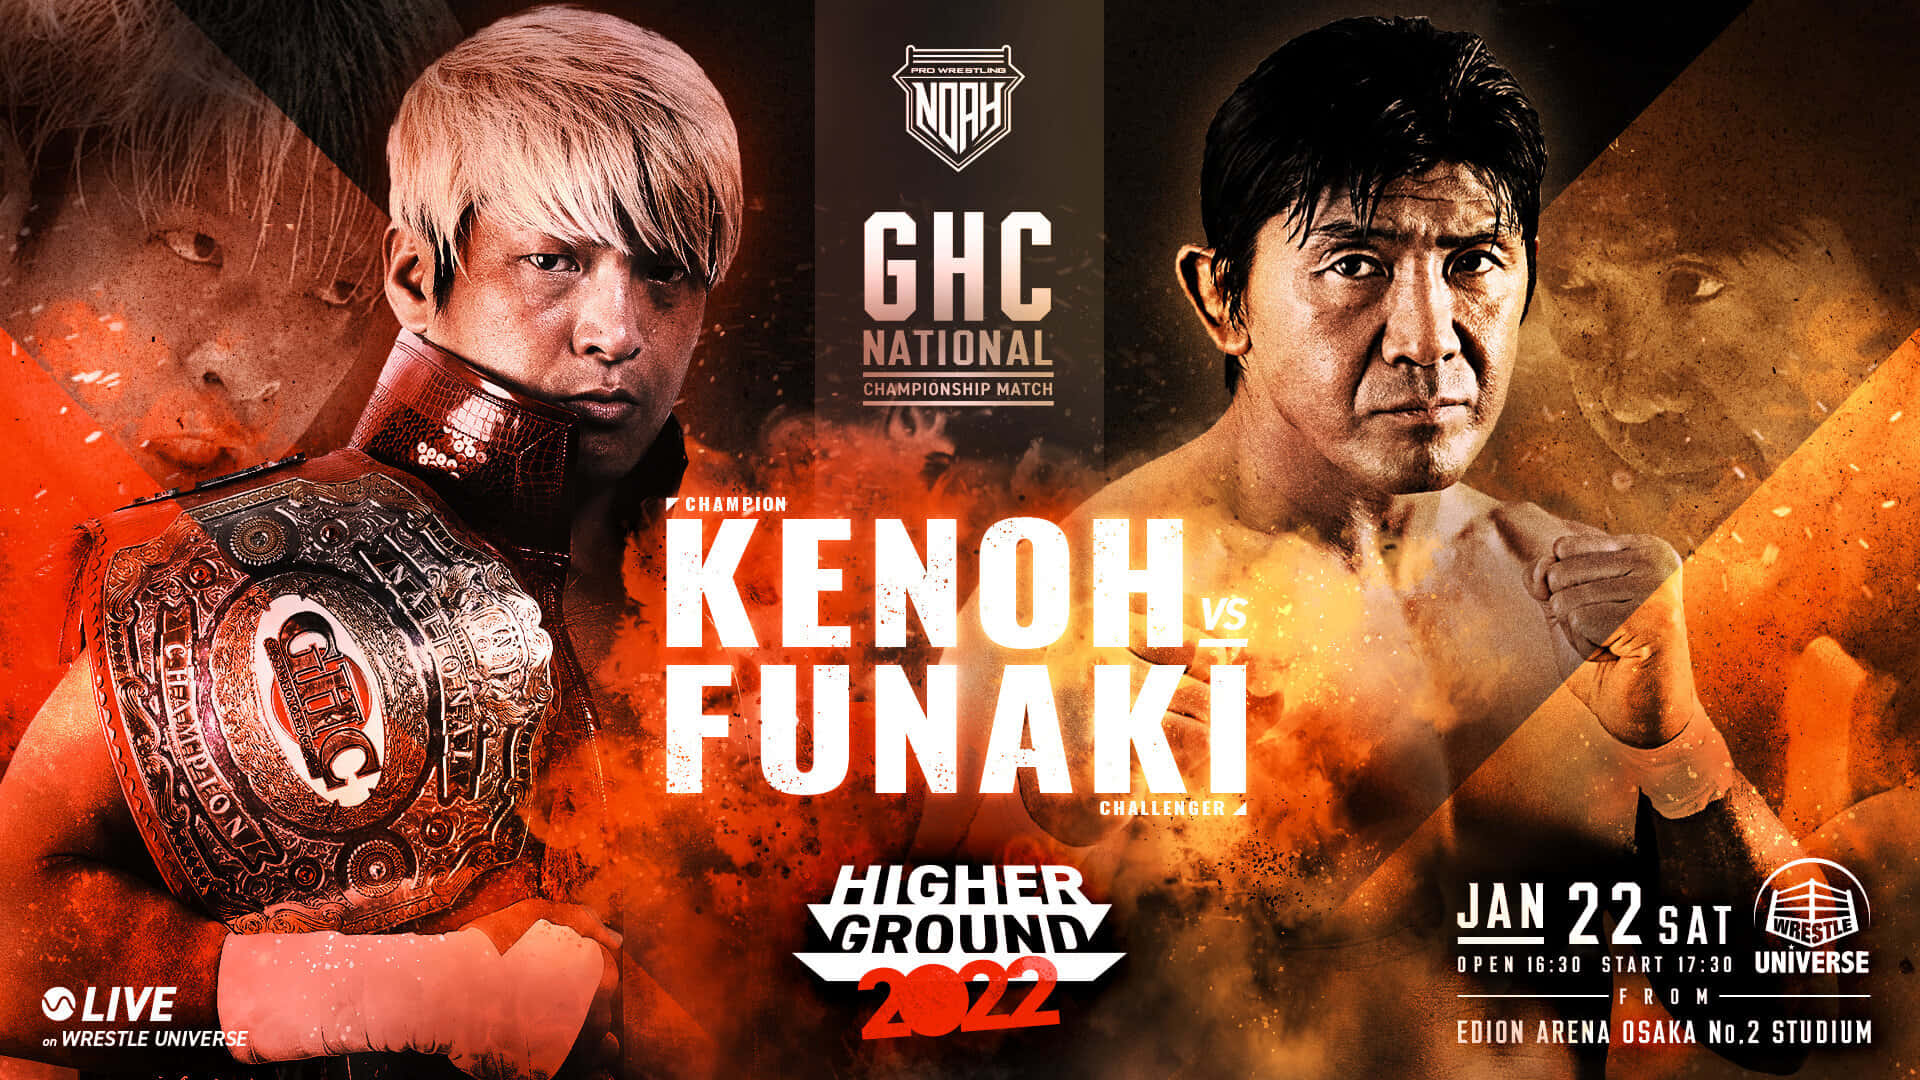 Kenoh mod Masakatsu Funaki Championship Match Wallpaper: Et billede af to wrestling legender, Kenoh og Masakatsu Funaki, der kæmper med en stærk energi. Wallpaper